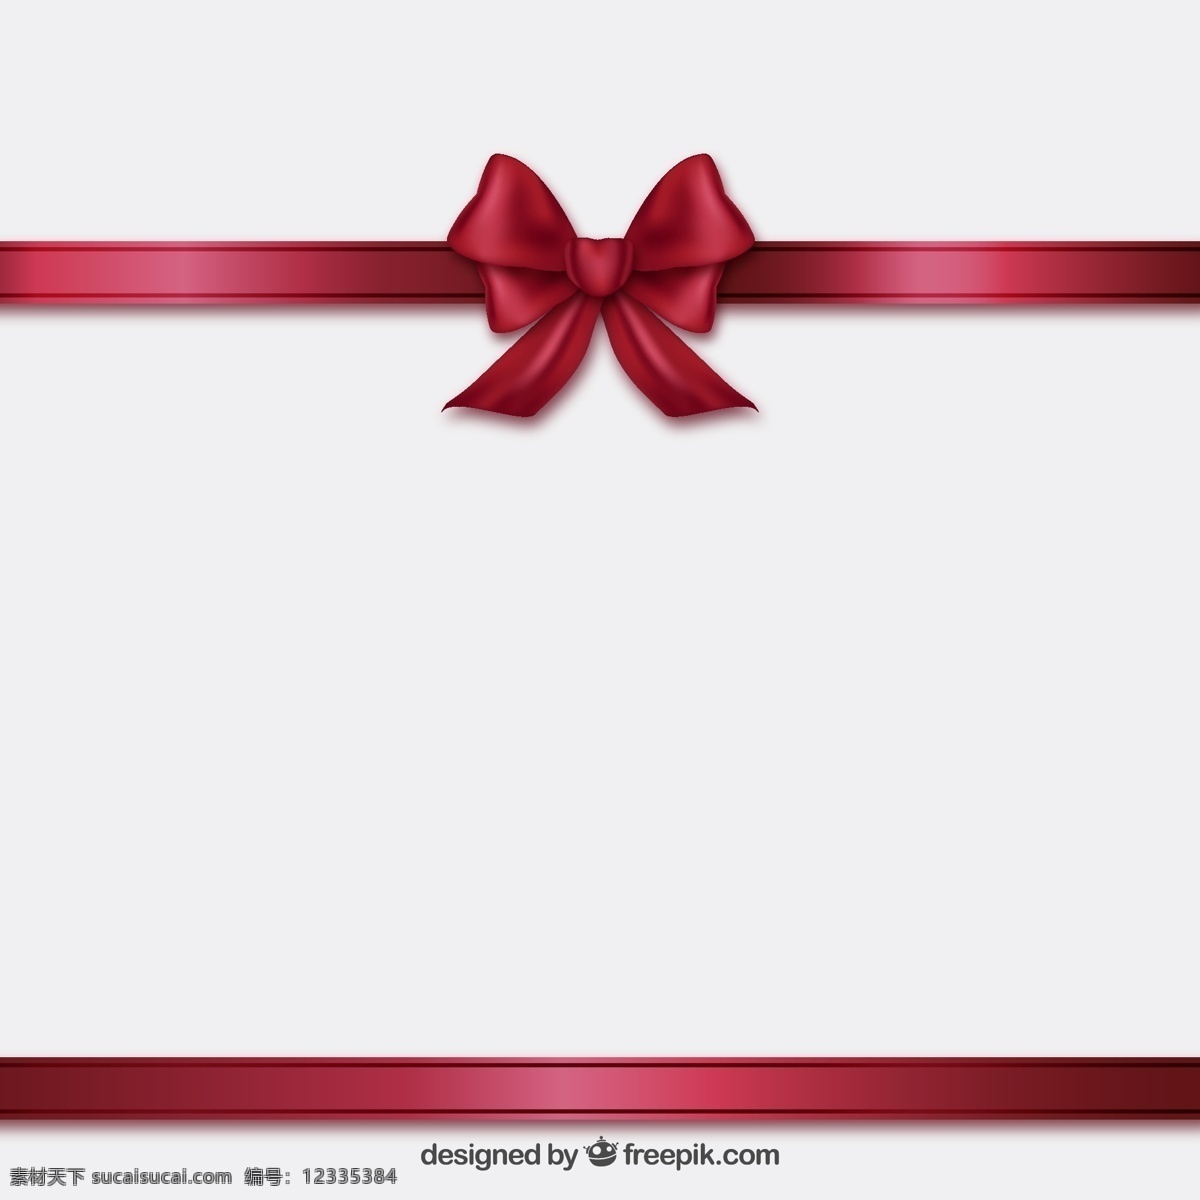 缎带和蝴蝶结 丝带 礼品 红色 目前 装修 装饰 织带 蝴蝶结 勃艮第 图标 高清 源文件